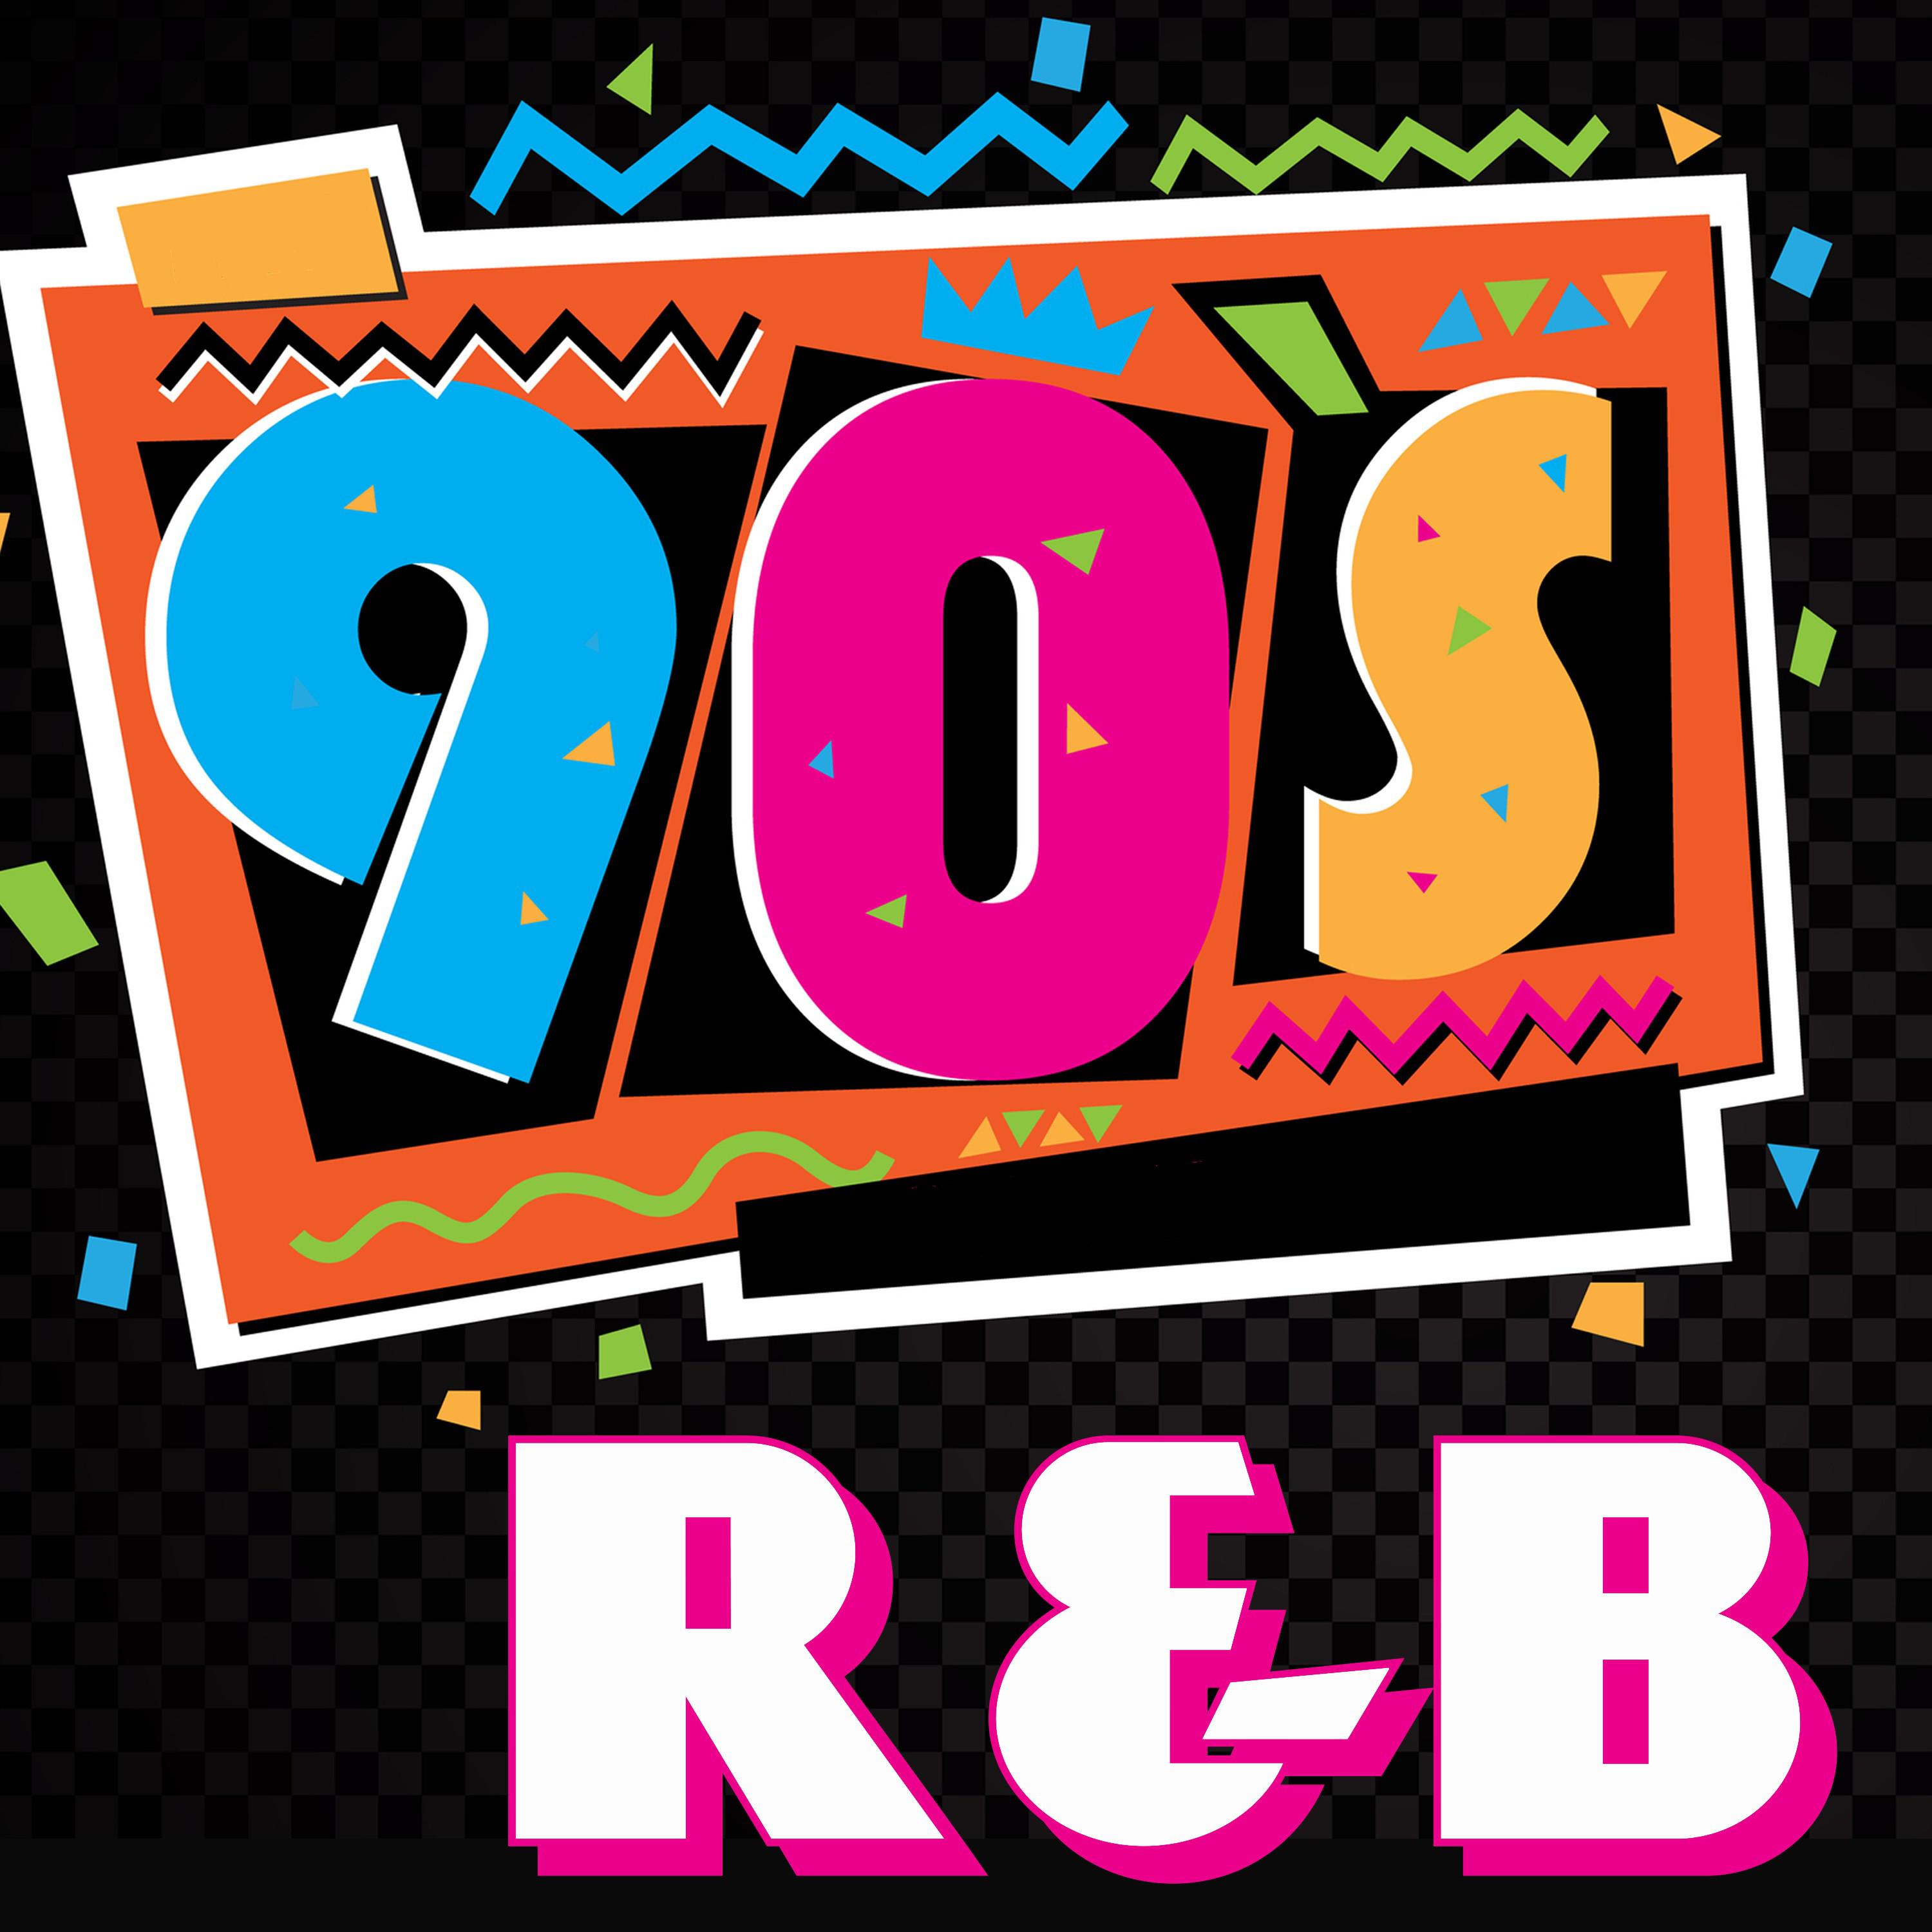 90's R&B